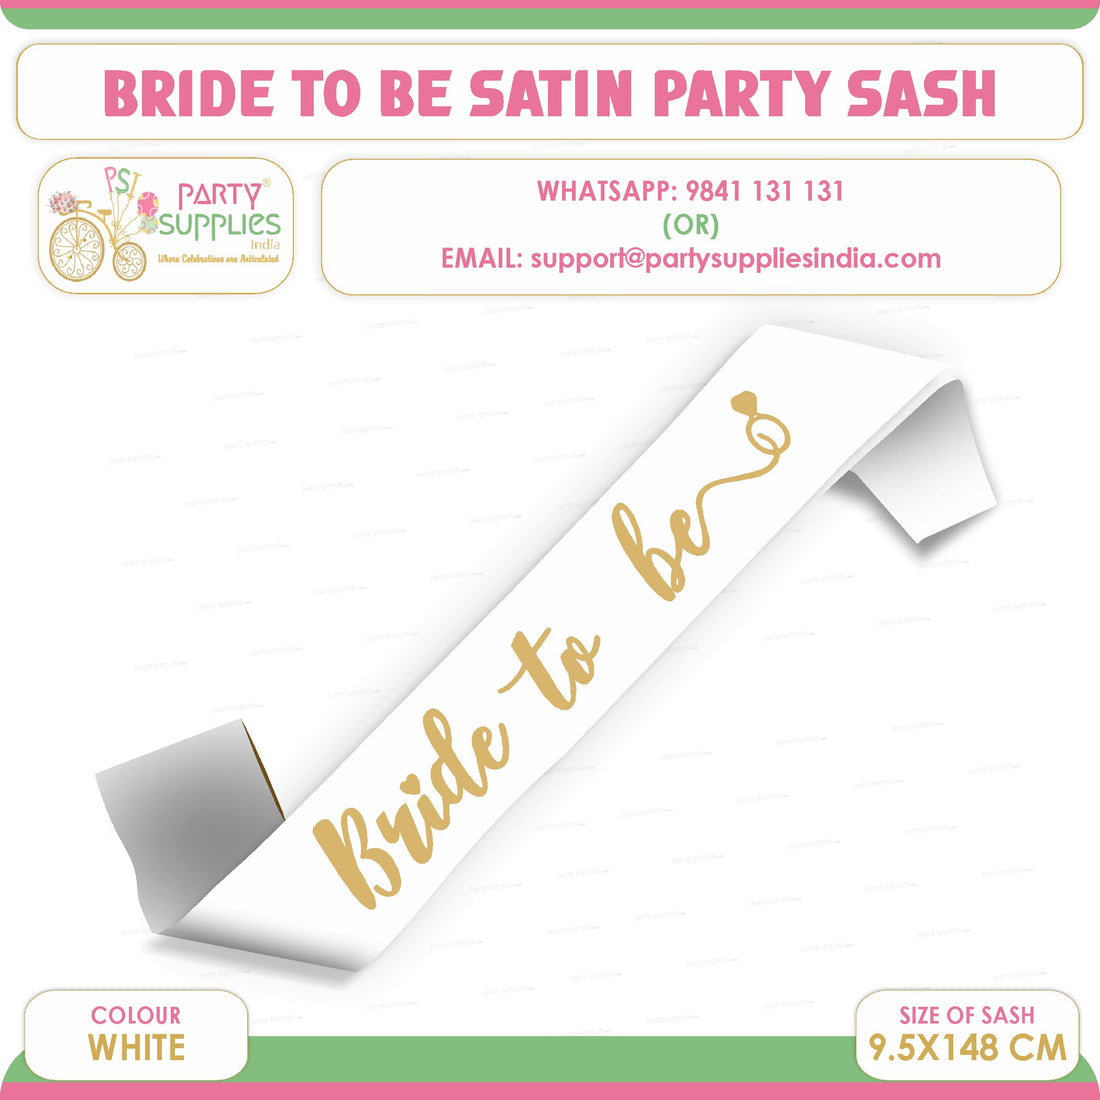 PSI Bride to Be White Satin Party Sash